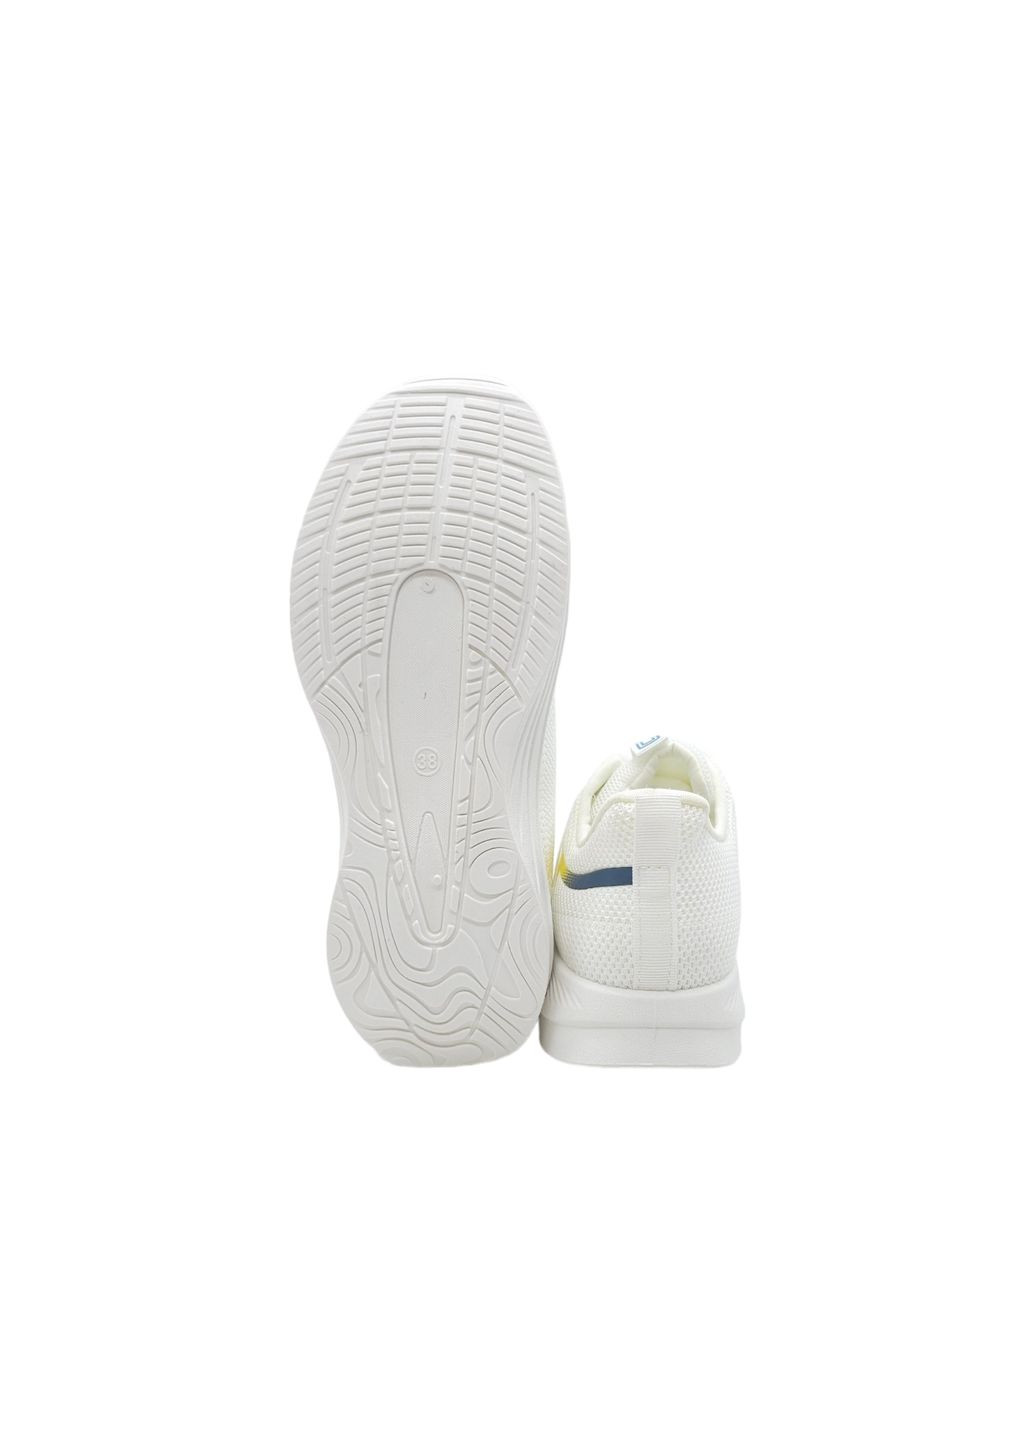 Белые всесезонные женские кроссовки белые текстиль l-16-41 23,5 см (р) Lonza